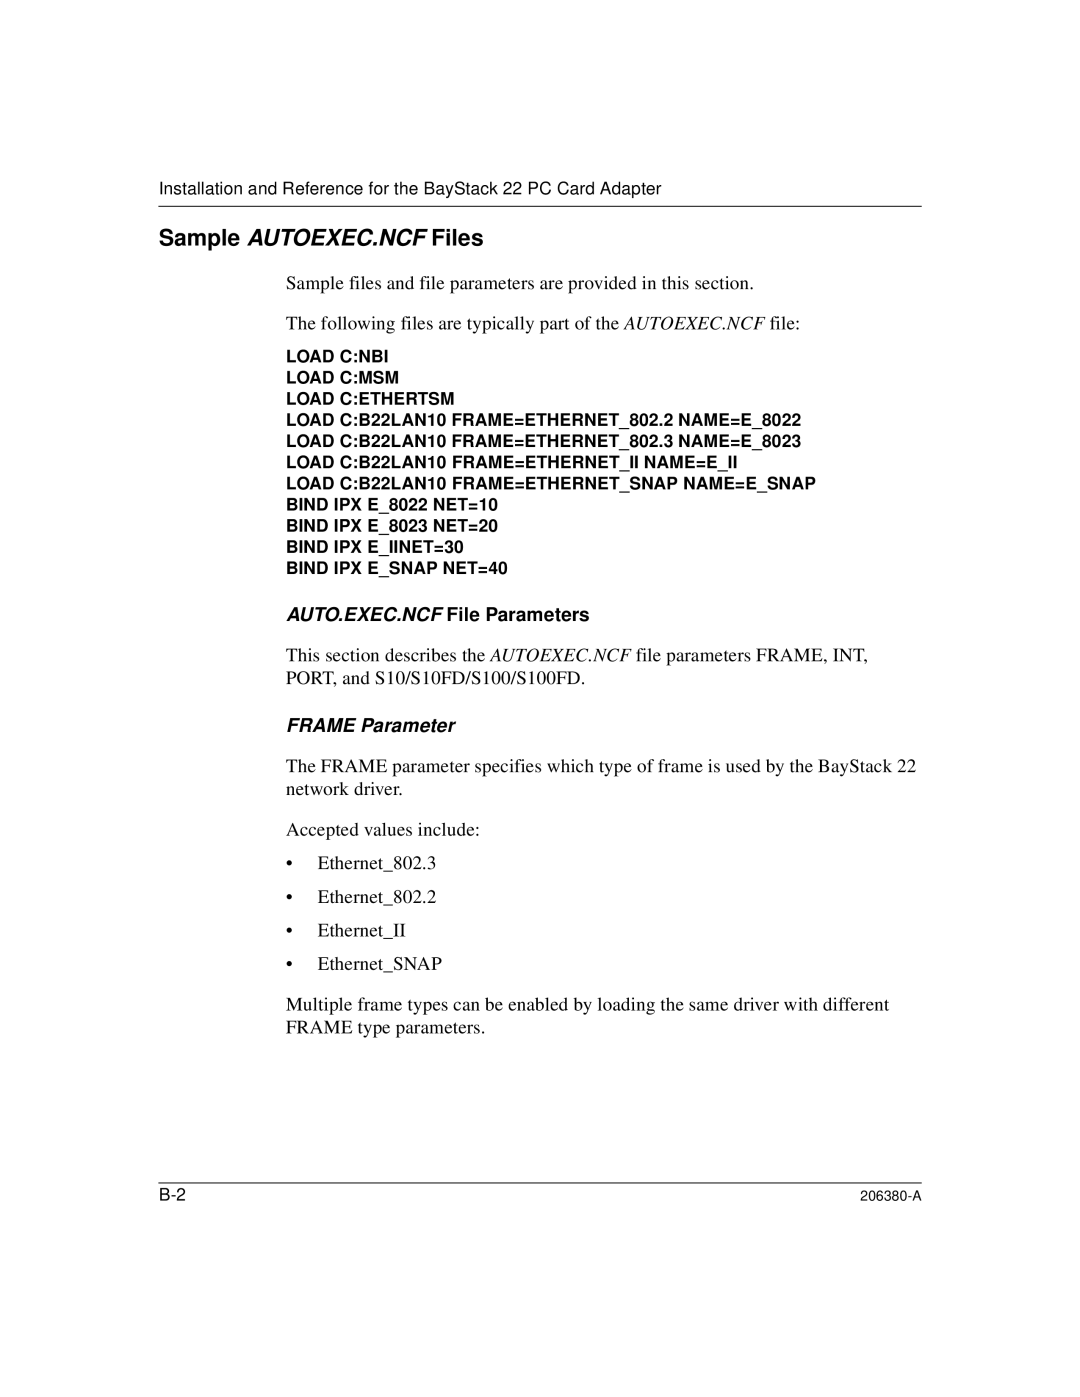 3Com 206380-A manual Sample AUTOEXEC.NCF Files, AUTO.EXEC.NCF File Parameters, FRAME Parameter 